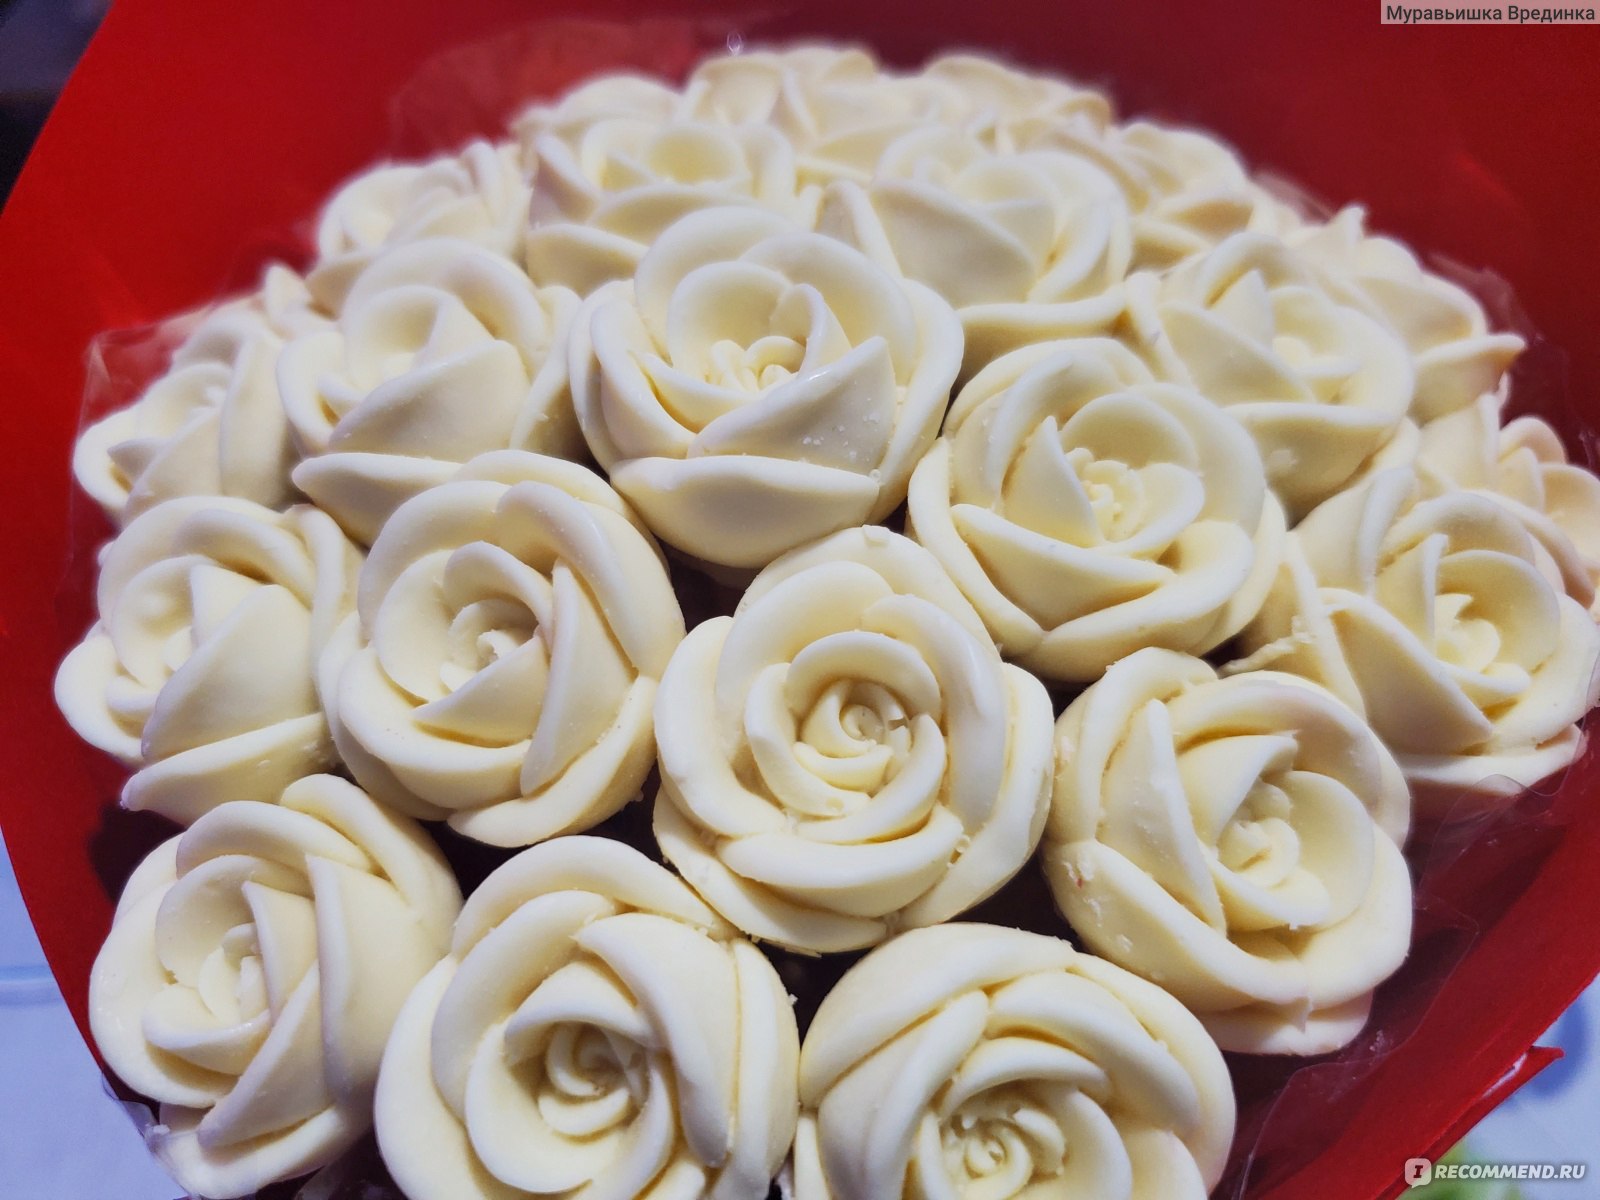 Шоколадные розы с доставкой от «МосЯгода»